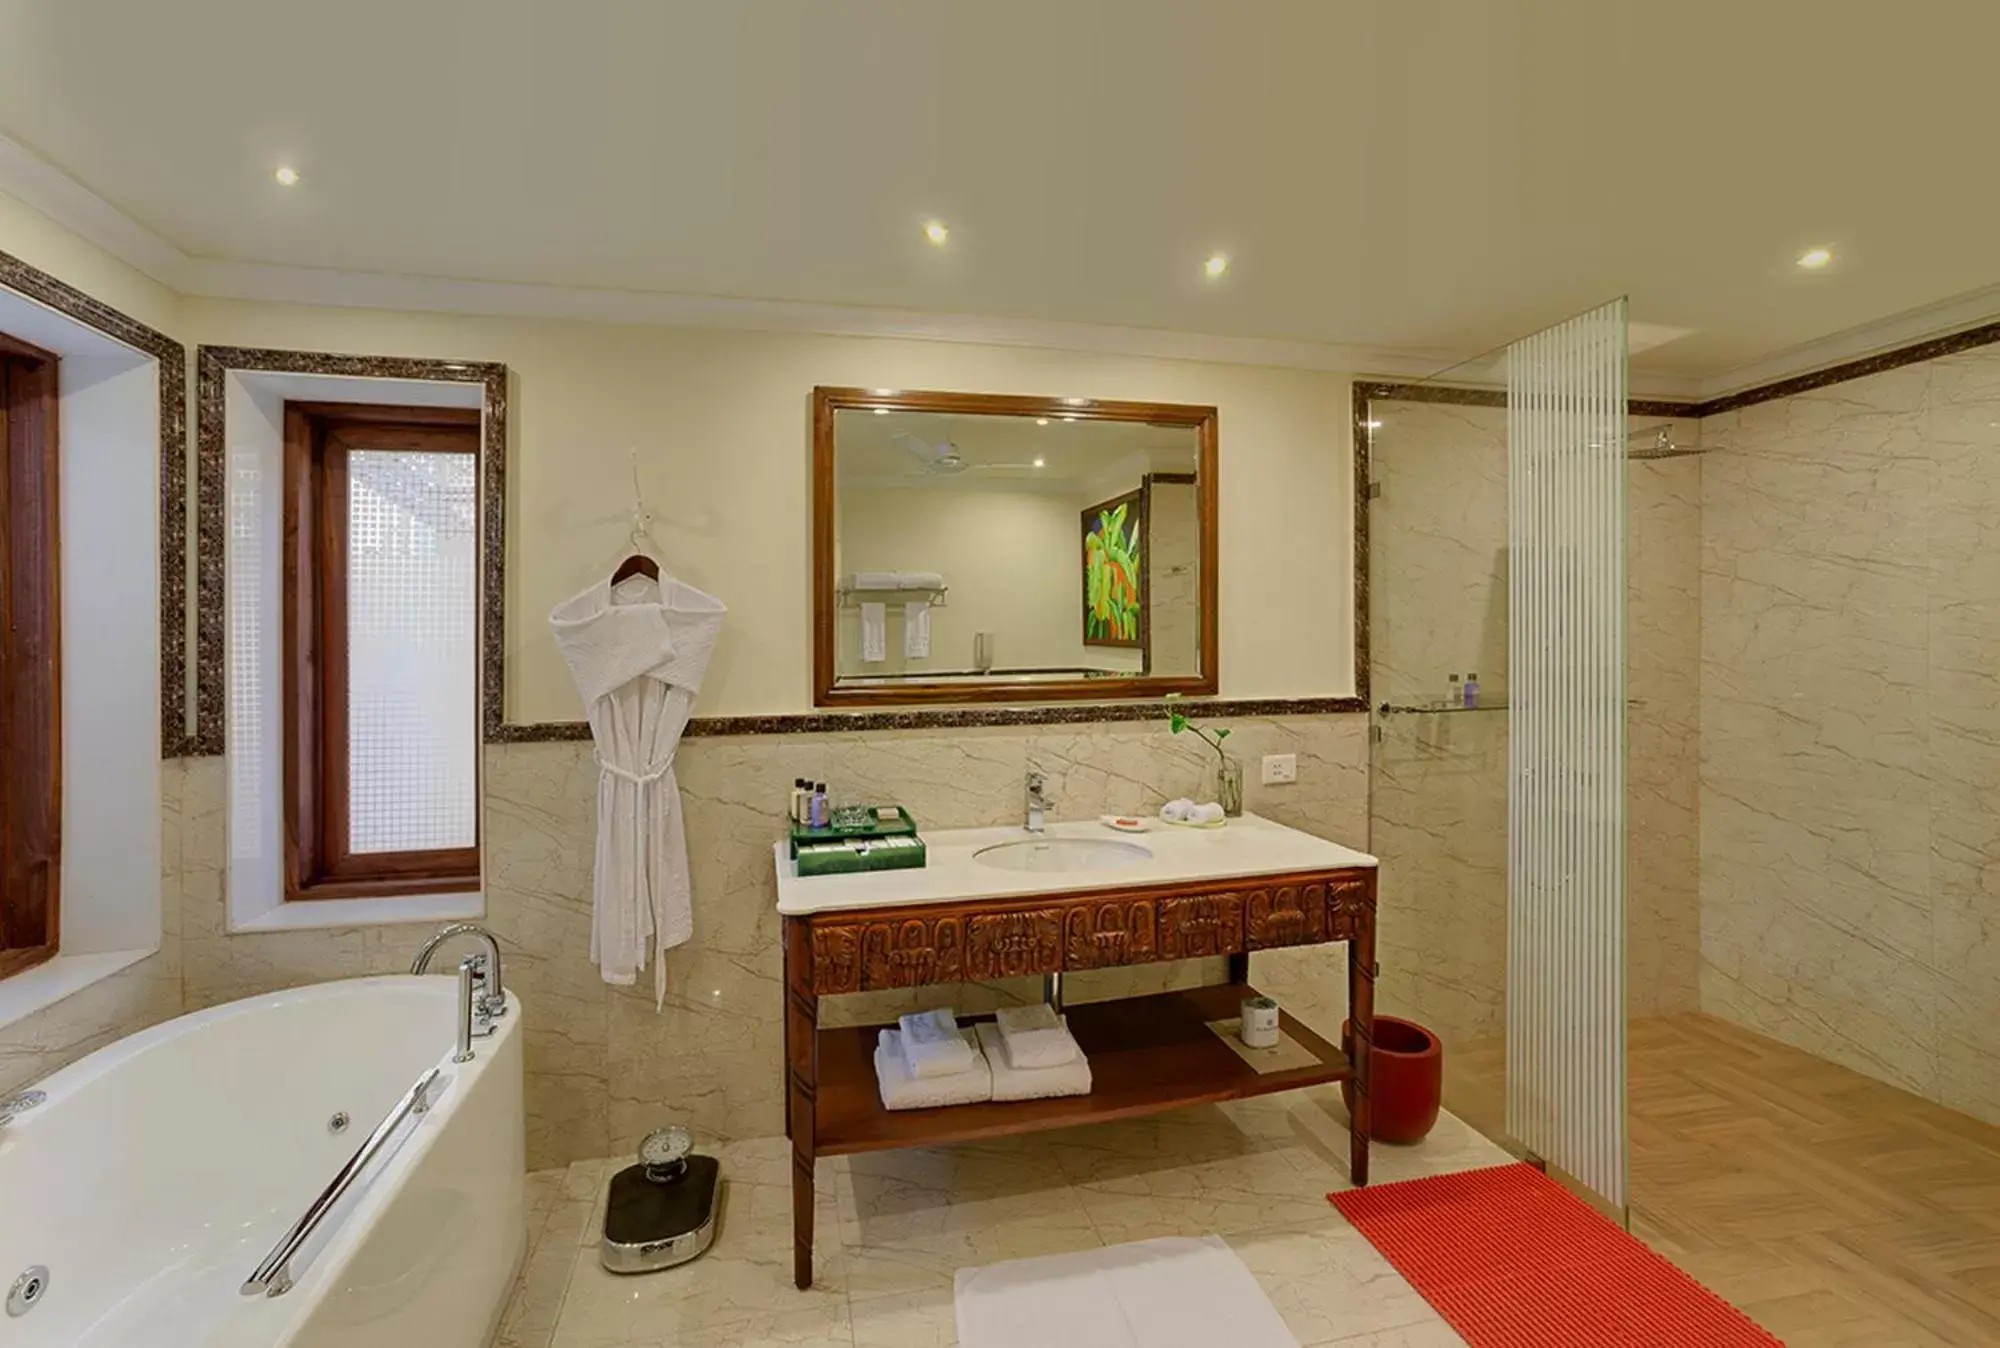 Bathroom in Mayfair Lagoon Hotel